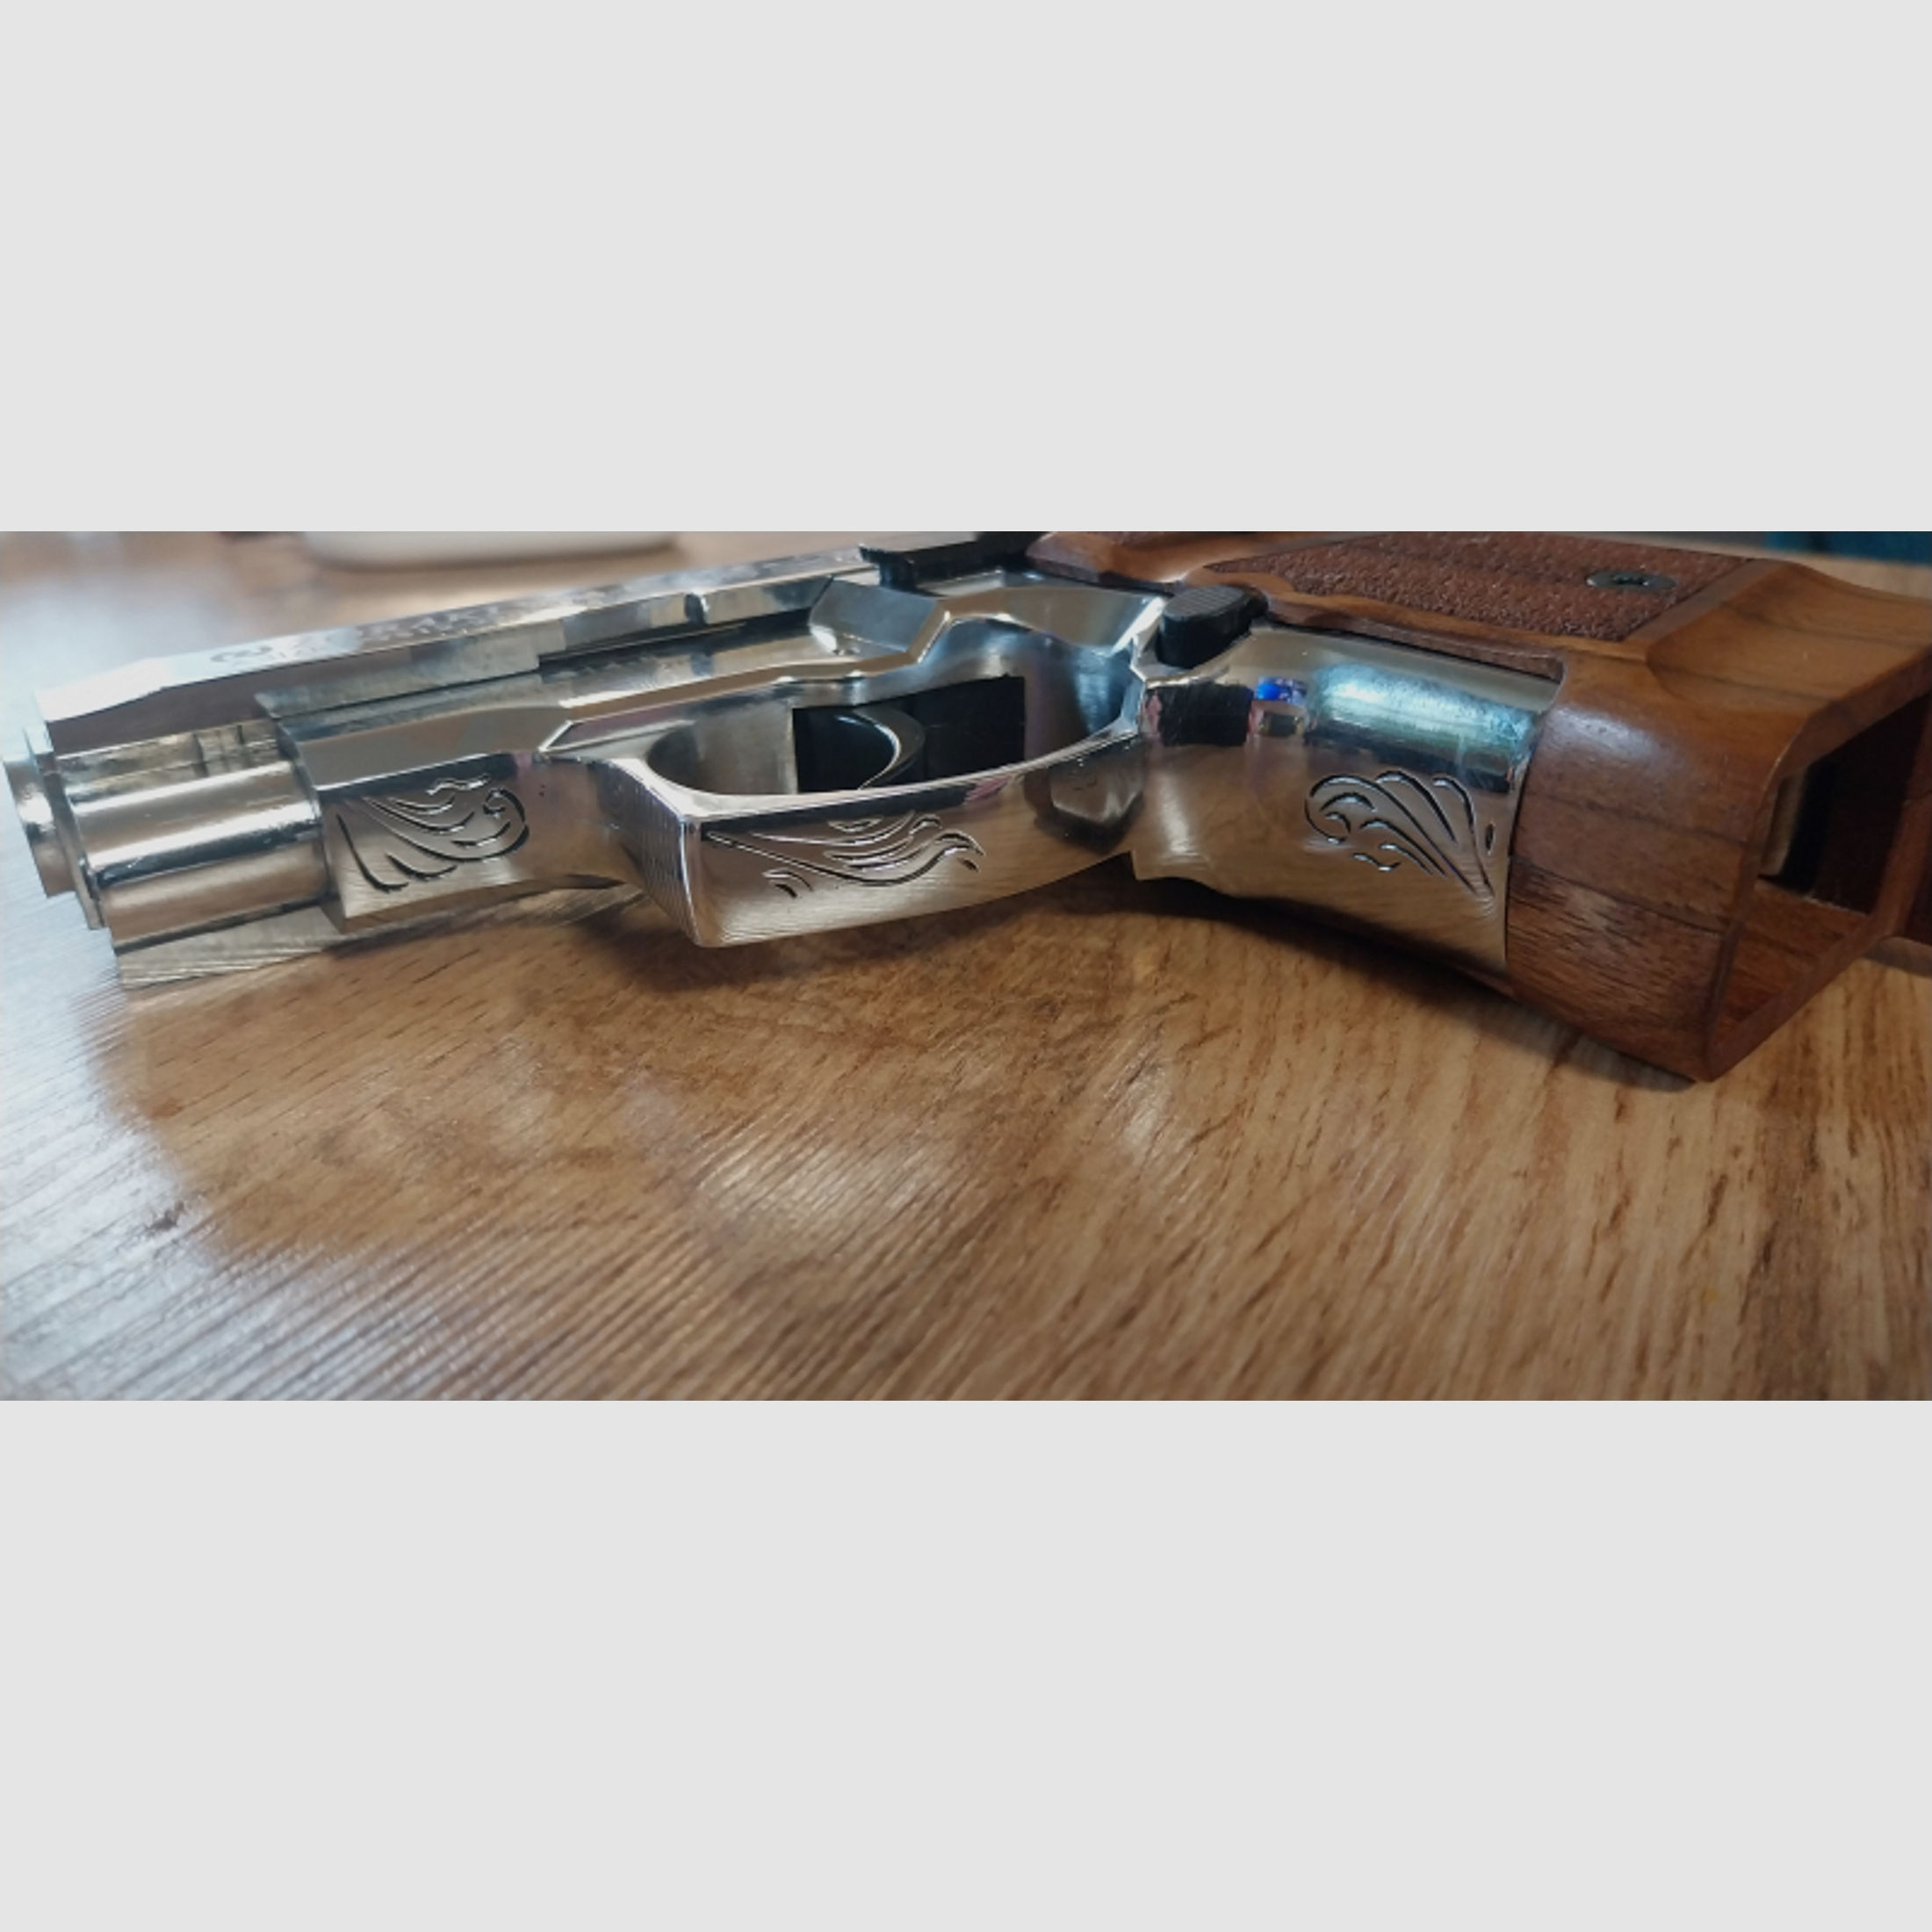 Zoraki 914 Schreckschuss Pistole Kal. 9mm P.A.K.Holzgriffschalen Waffenhoster Chrom graviert